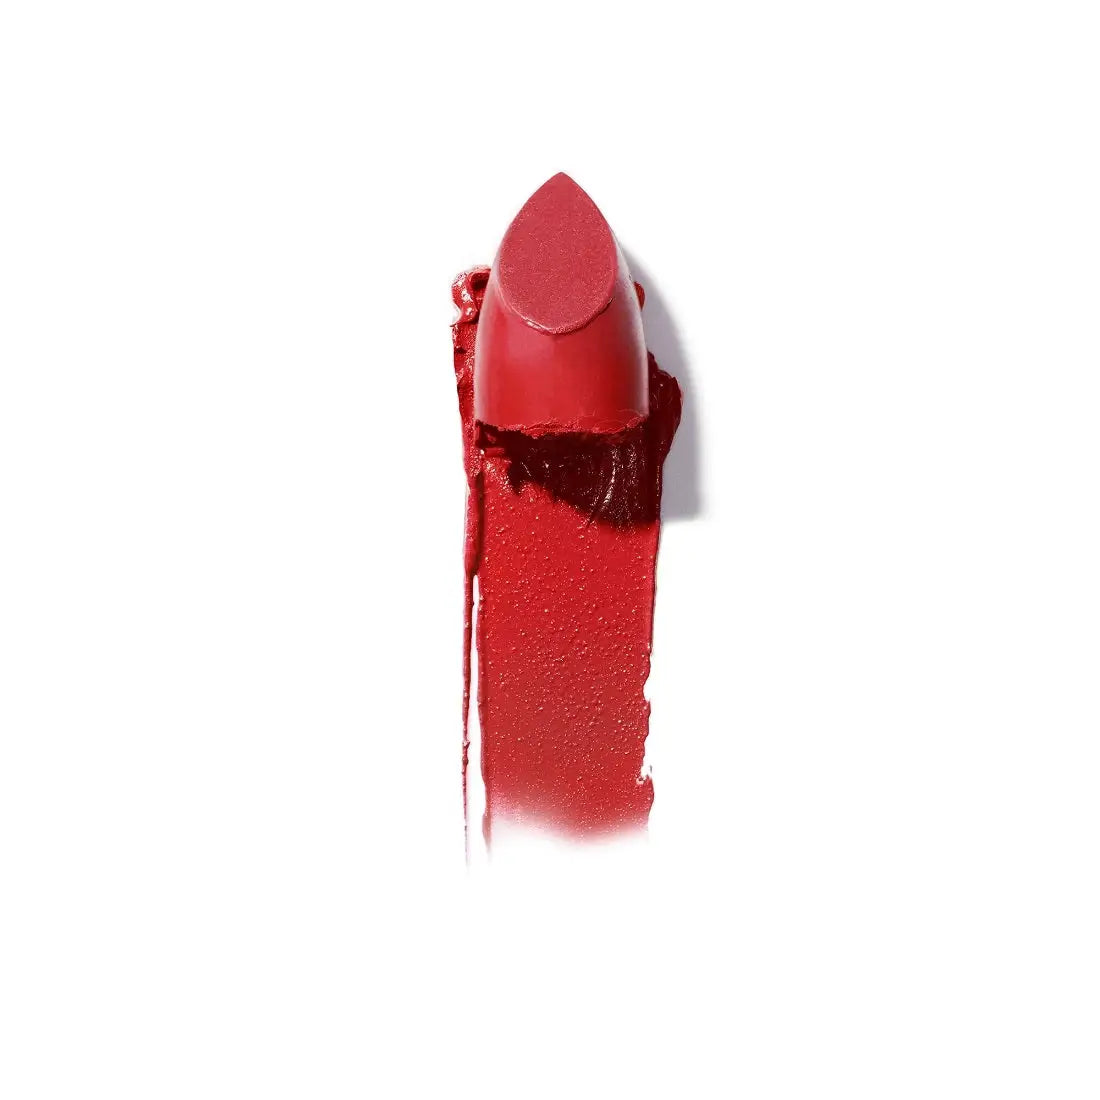 Ilia Beauty Color Block Lipstick 4g - Grenadine Free 